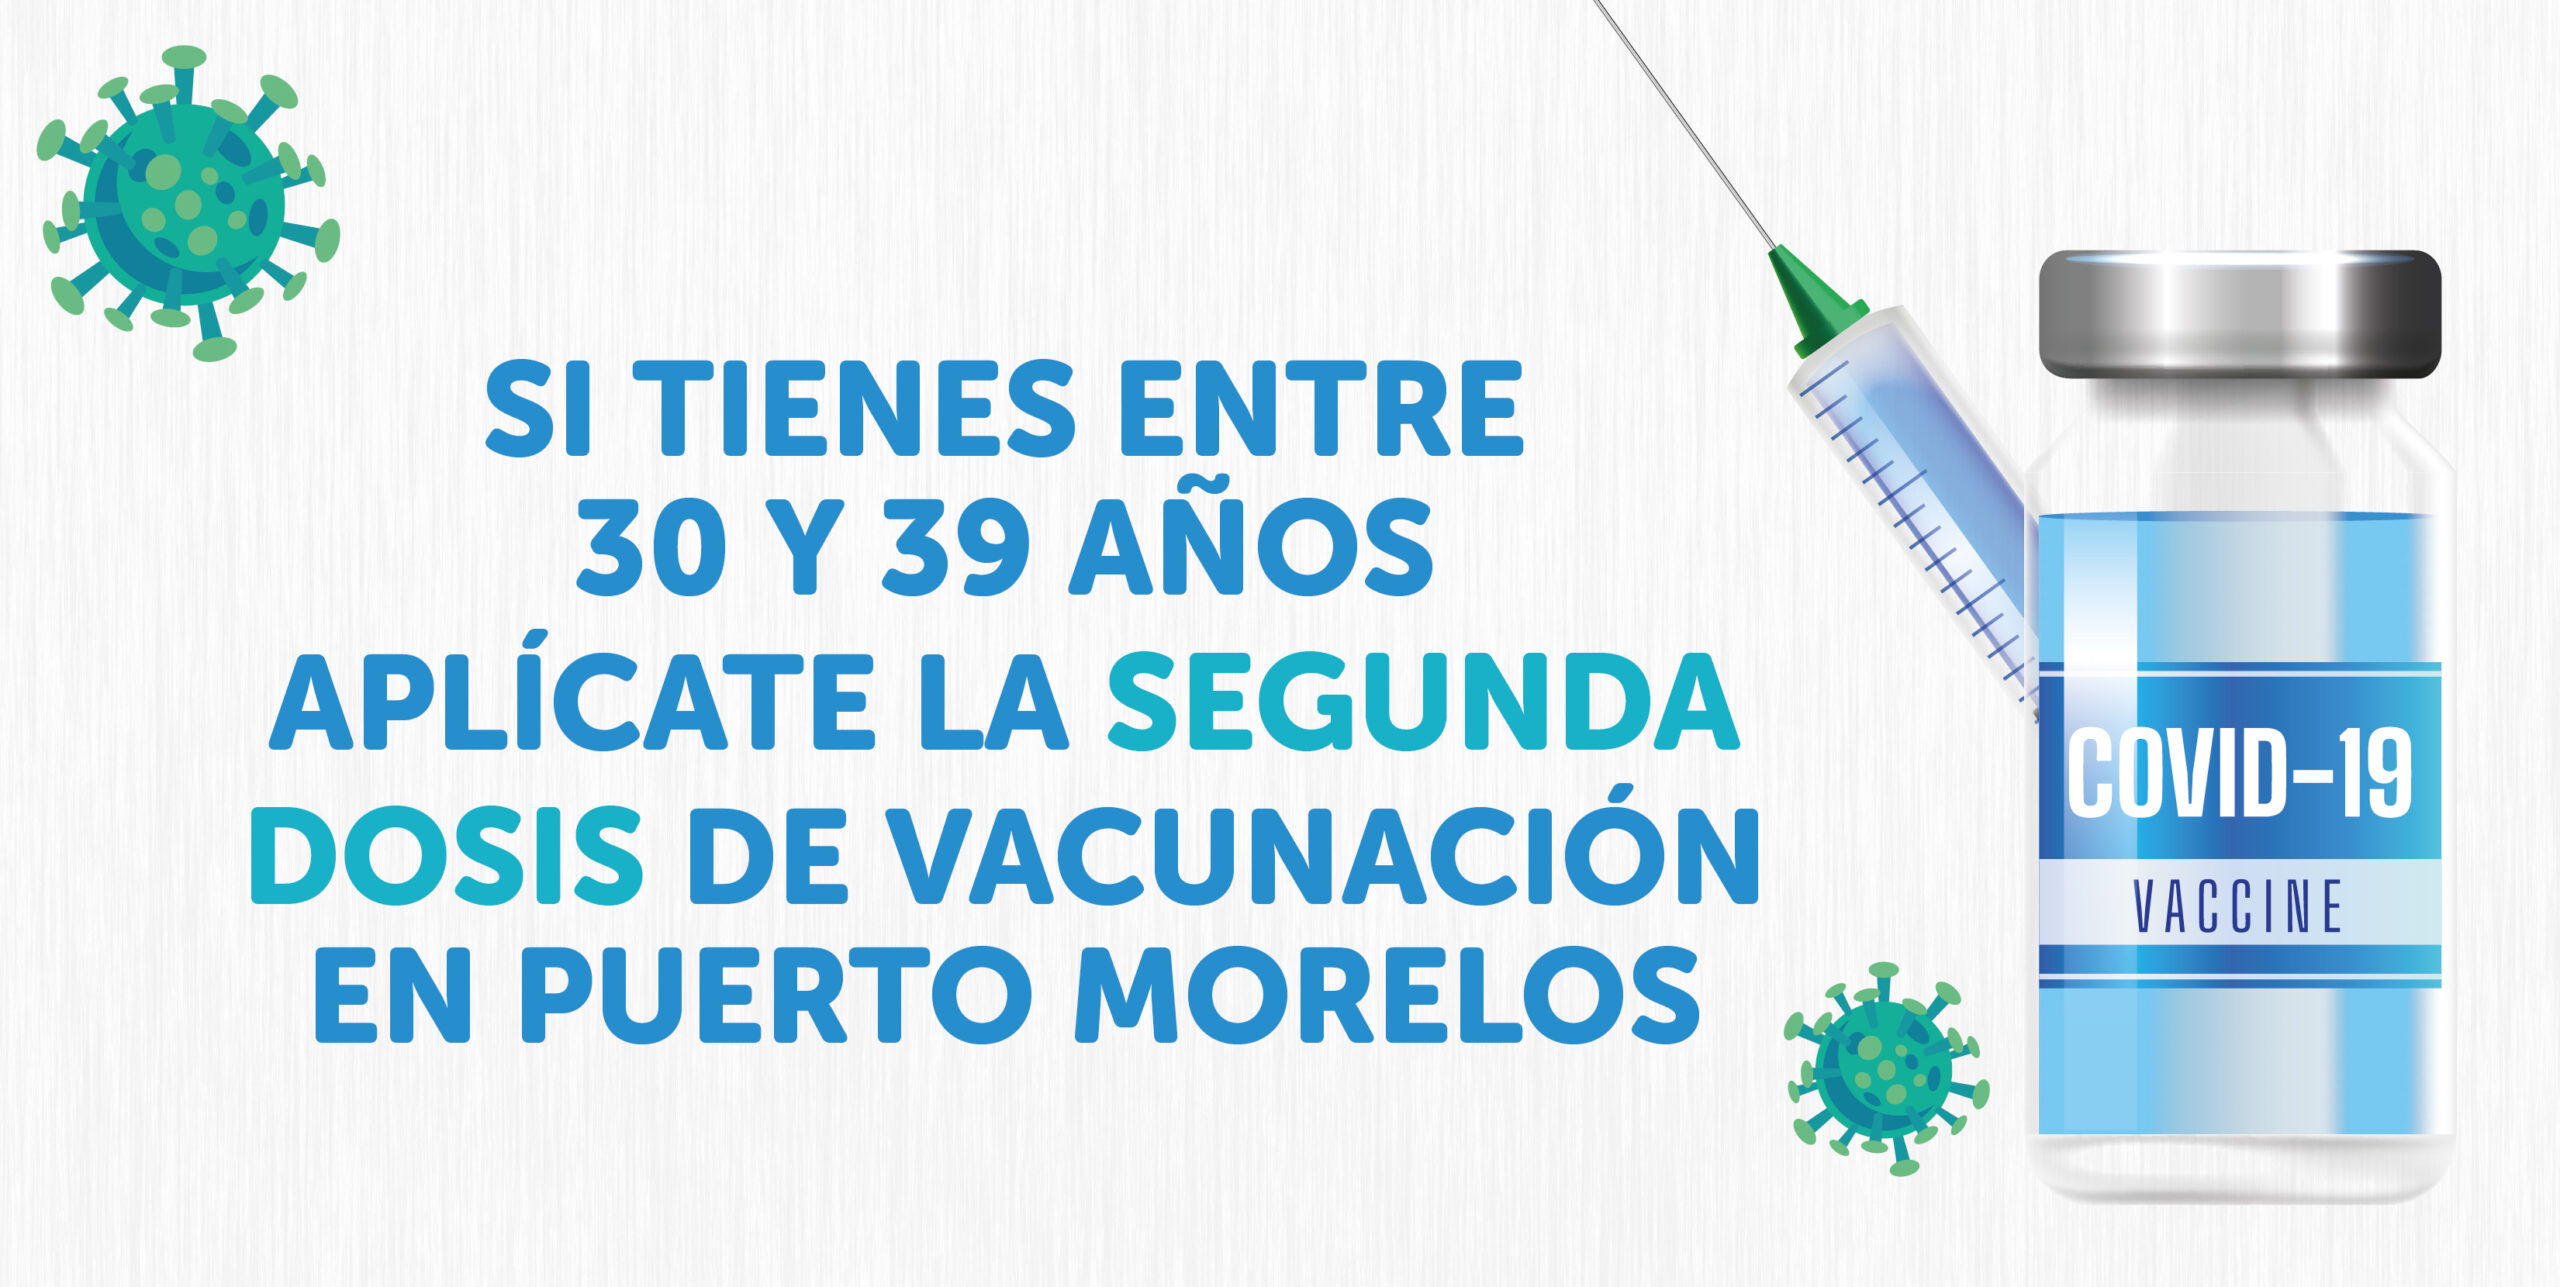 ¿Tienes entre 30 y39 años? ¡Te corresponde la segunda dosis en Puerto Morelos!